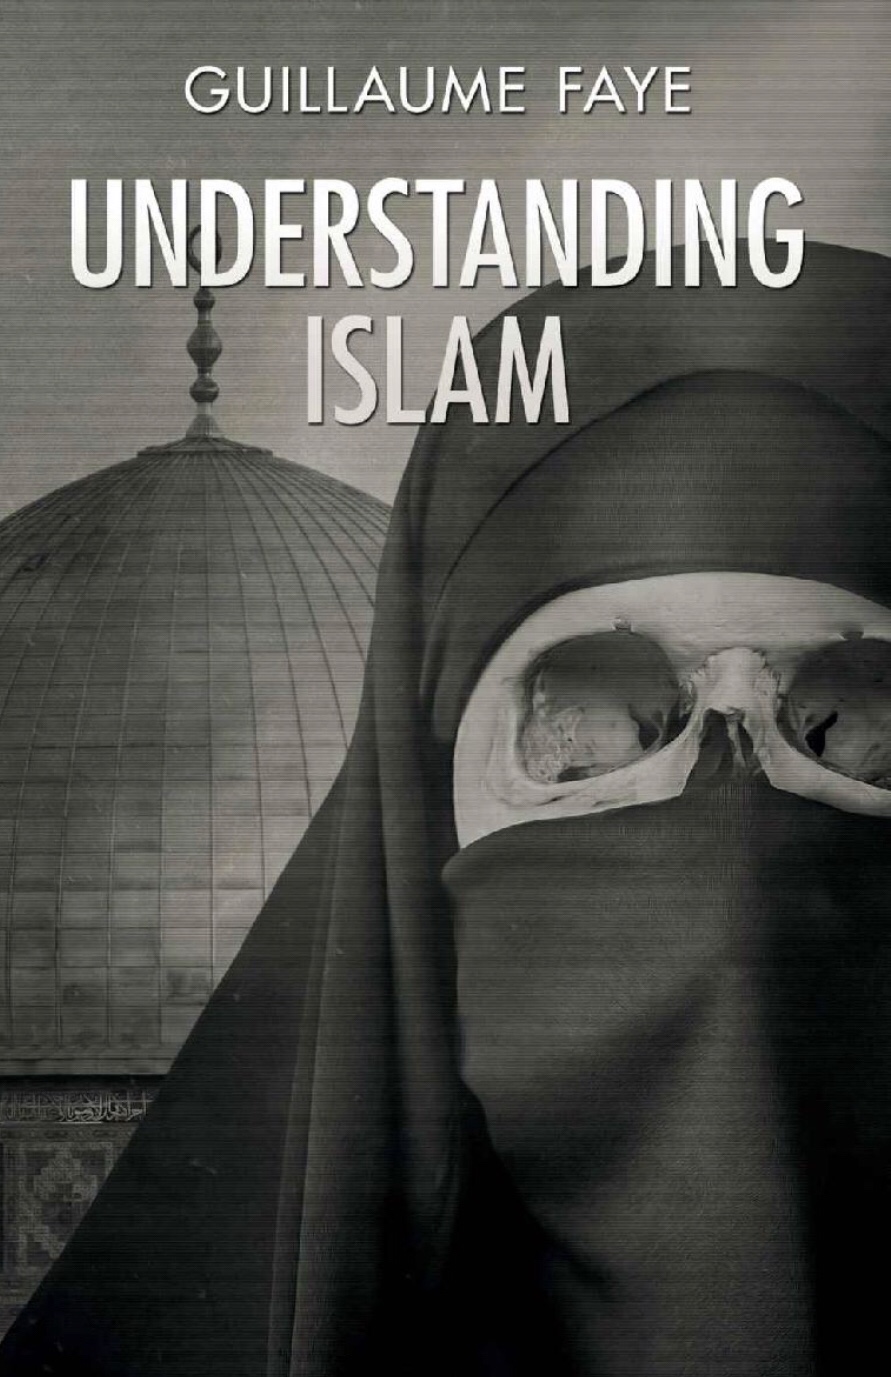 مراجعتي للفصل الأول من كتاب “Understanding Islam” للراحل غيوم فاي.